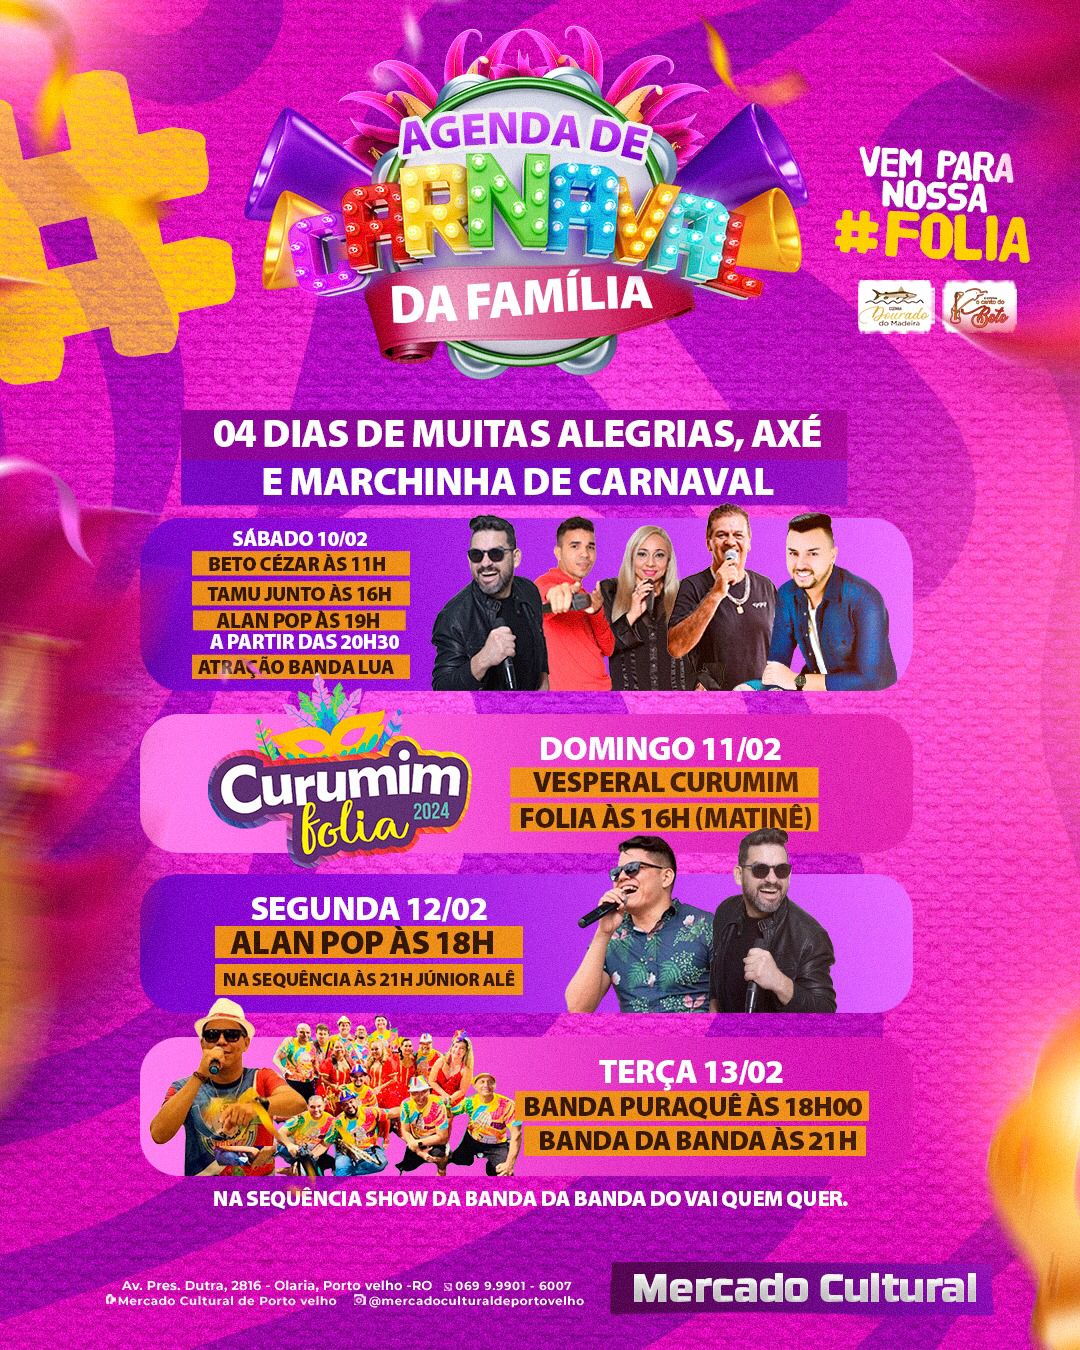 Carnaval da Família' no Mercado Cultural de PVH - News Rondônia